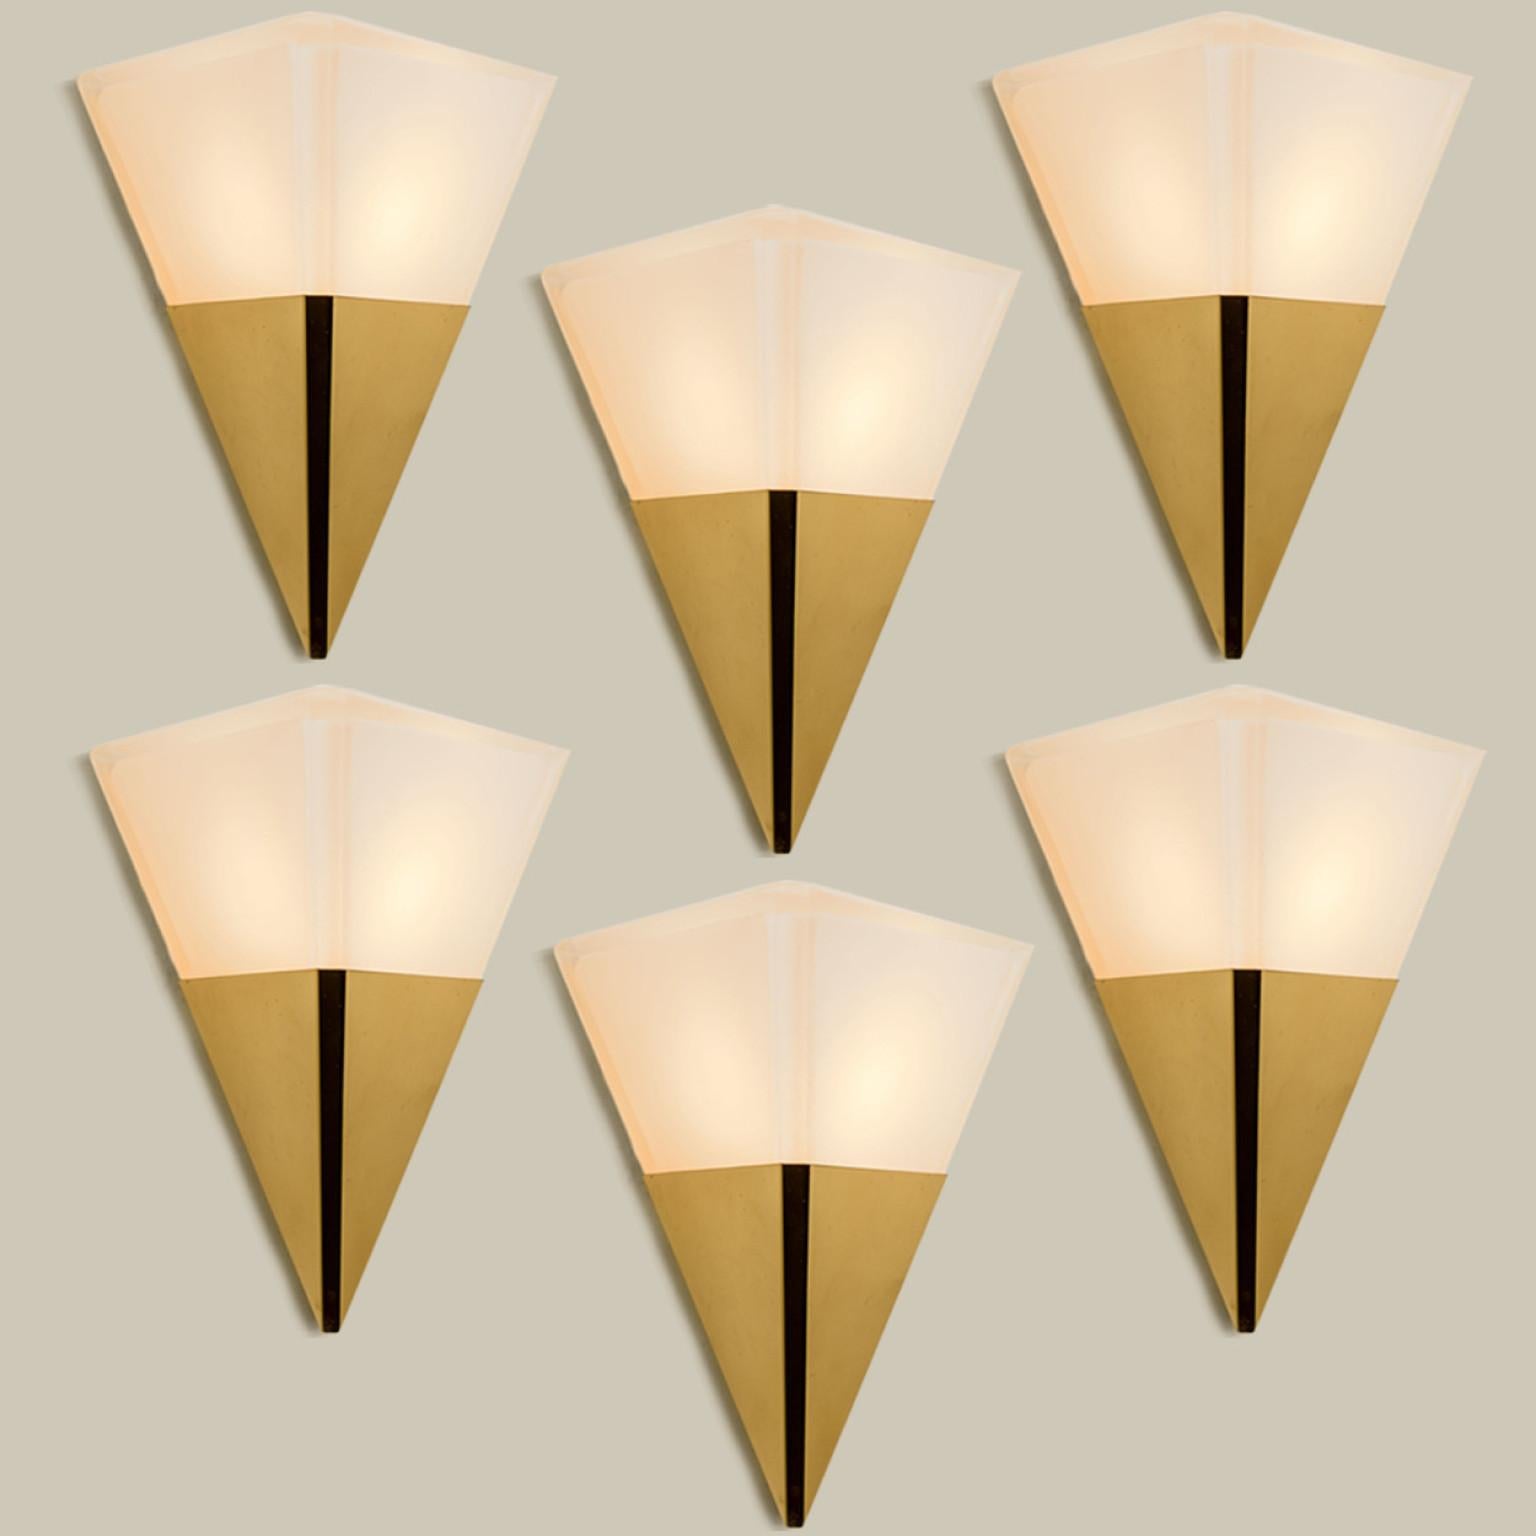 Pyramidenförmige Wandleuchten aus weißem Opalglas mit Messingdetails. Hergestellt von Glashütte Limburg in Deutschland in den 1970er Jahren. (Anfang der 1970er Jahre).

Schöne Handwerkskunst. Minimalistisches, geometrisches und einfach geformtes